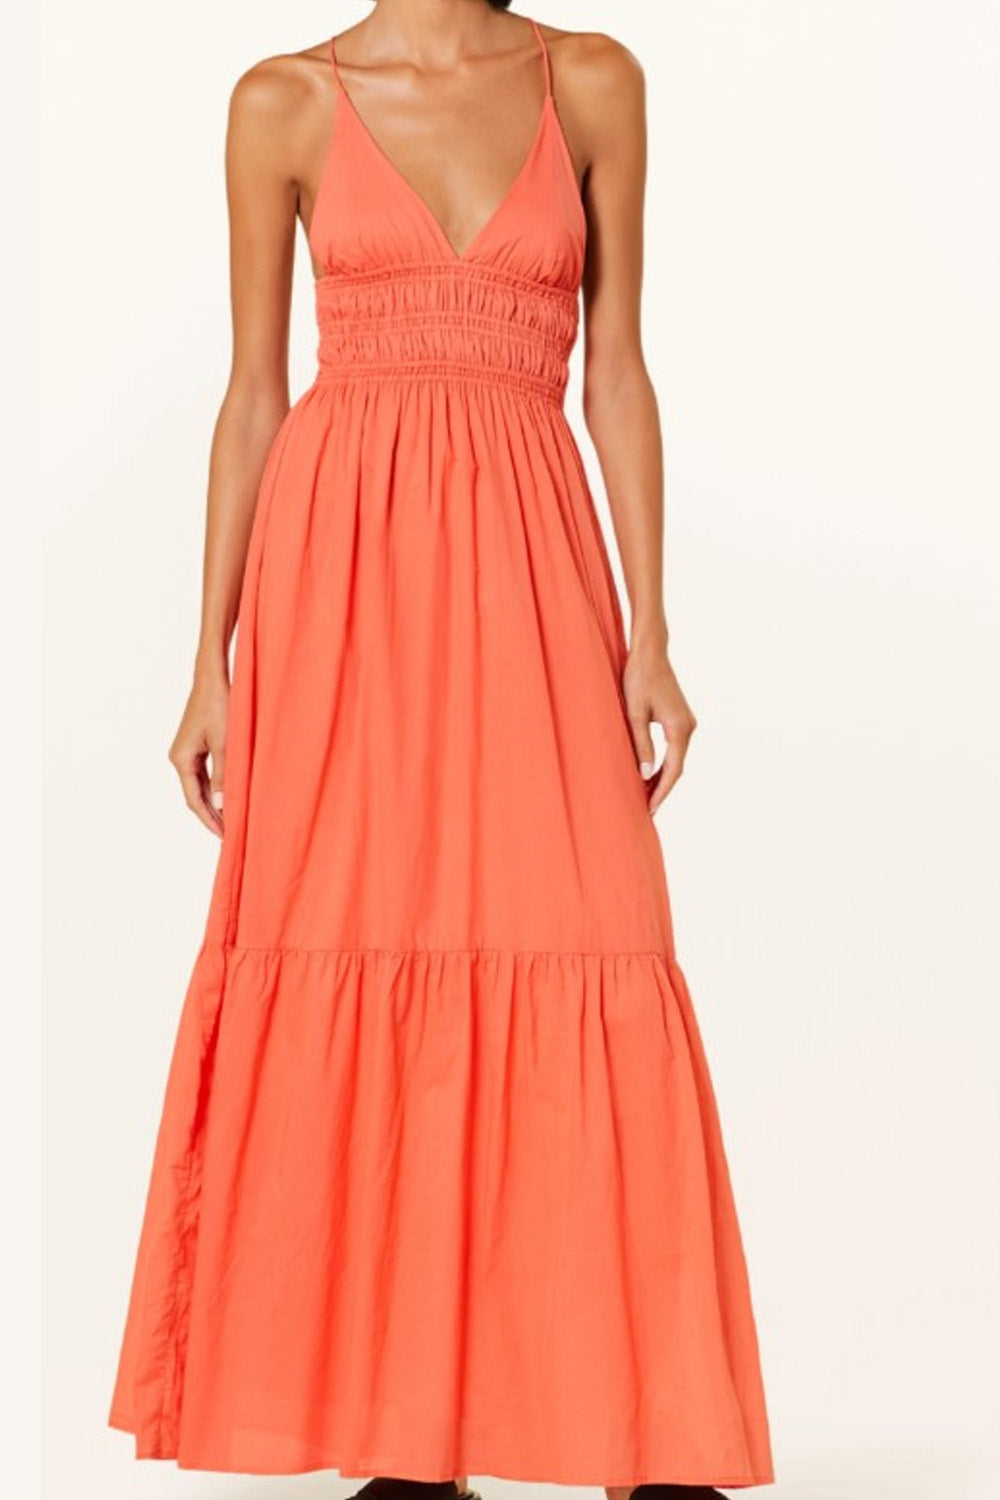 Majesty Orange Dress